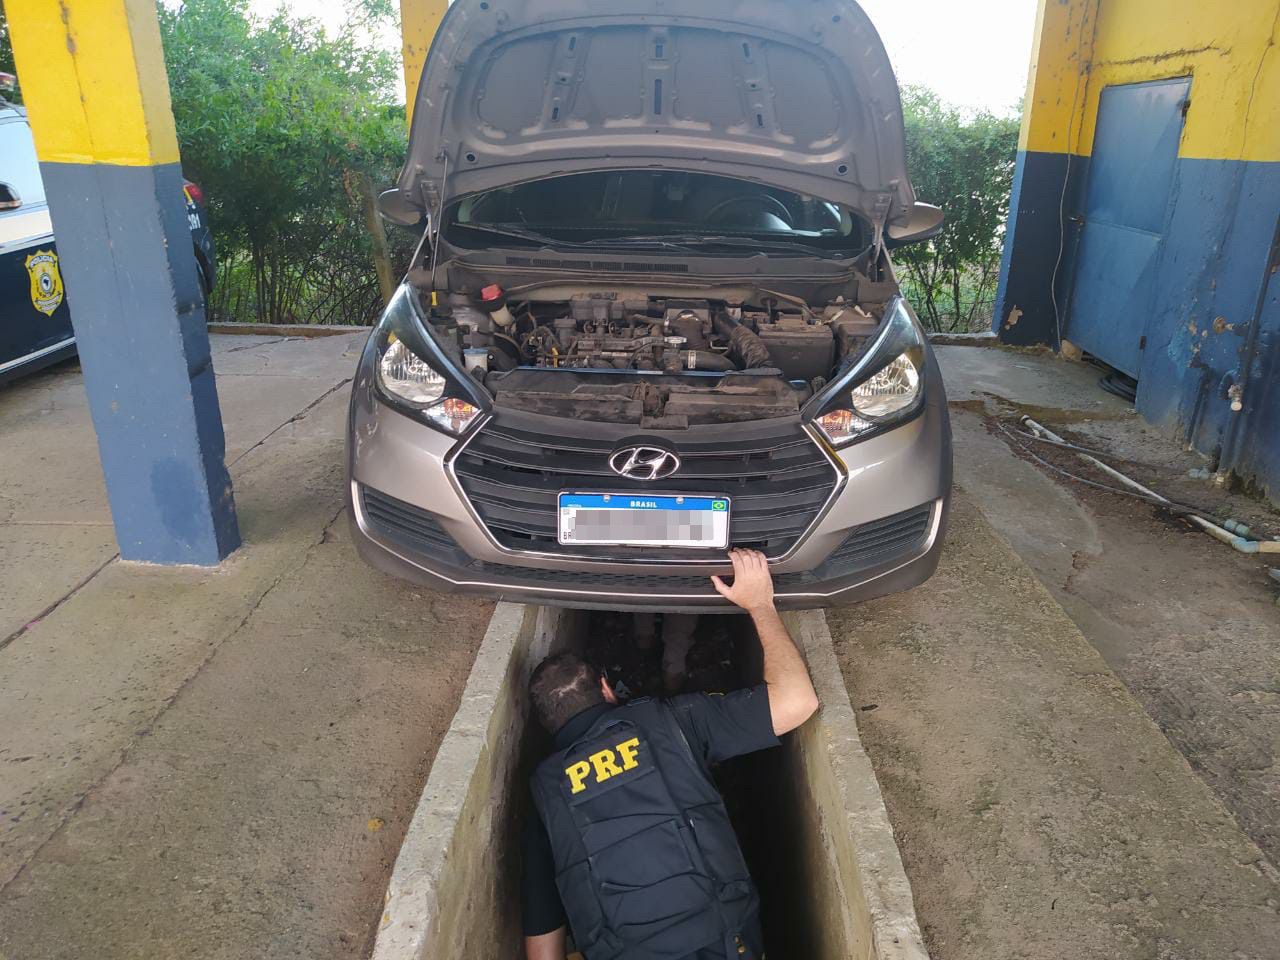 Gravataiense é preso ao ser flagrado fumando crack enquanto dirigia carro clonado na BR-116